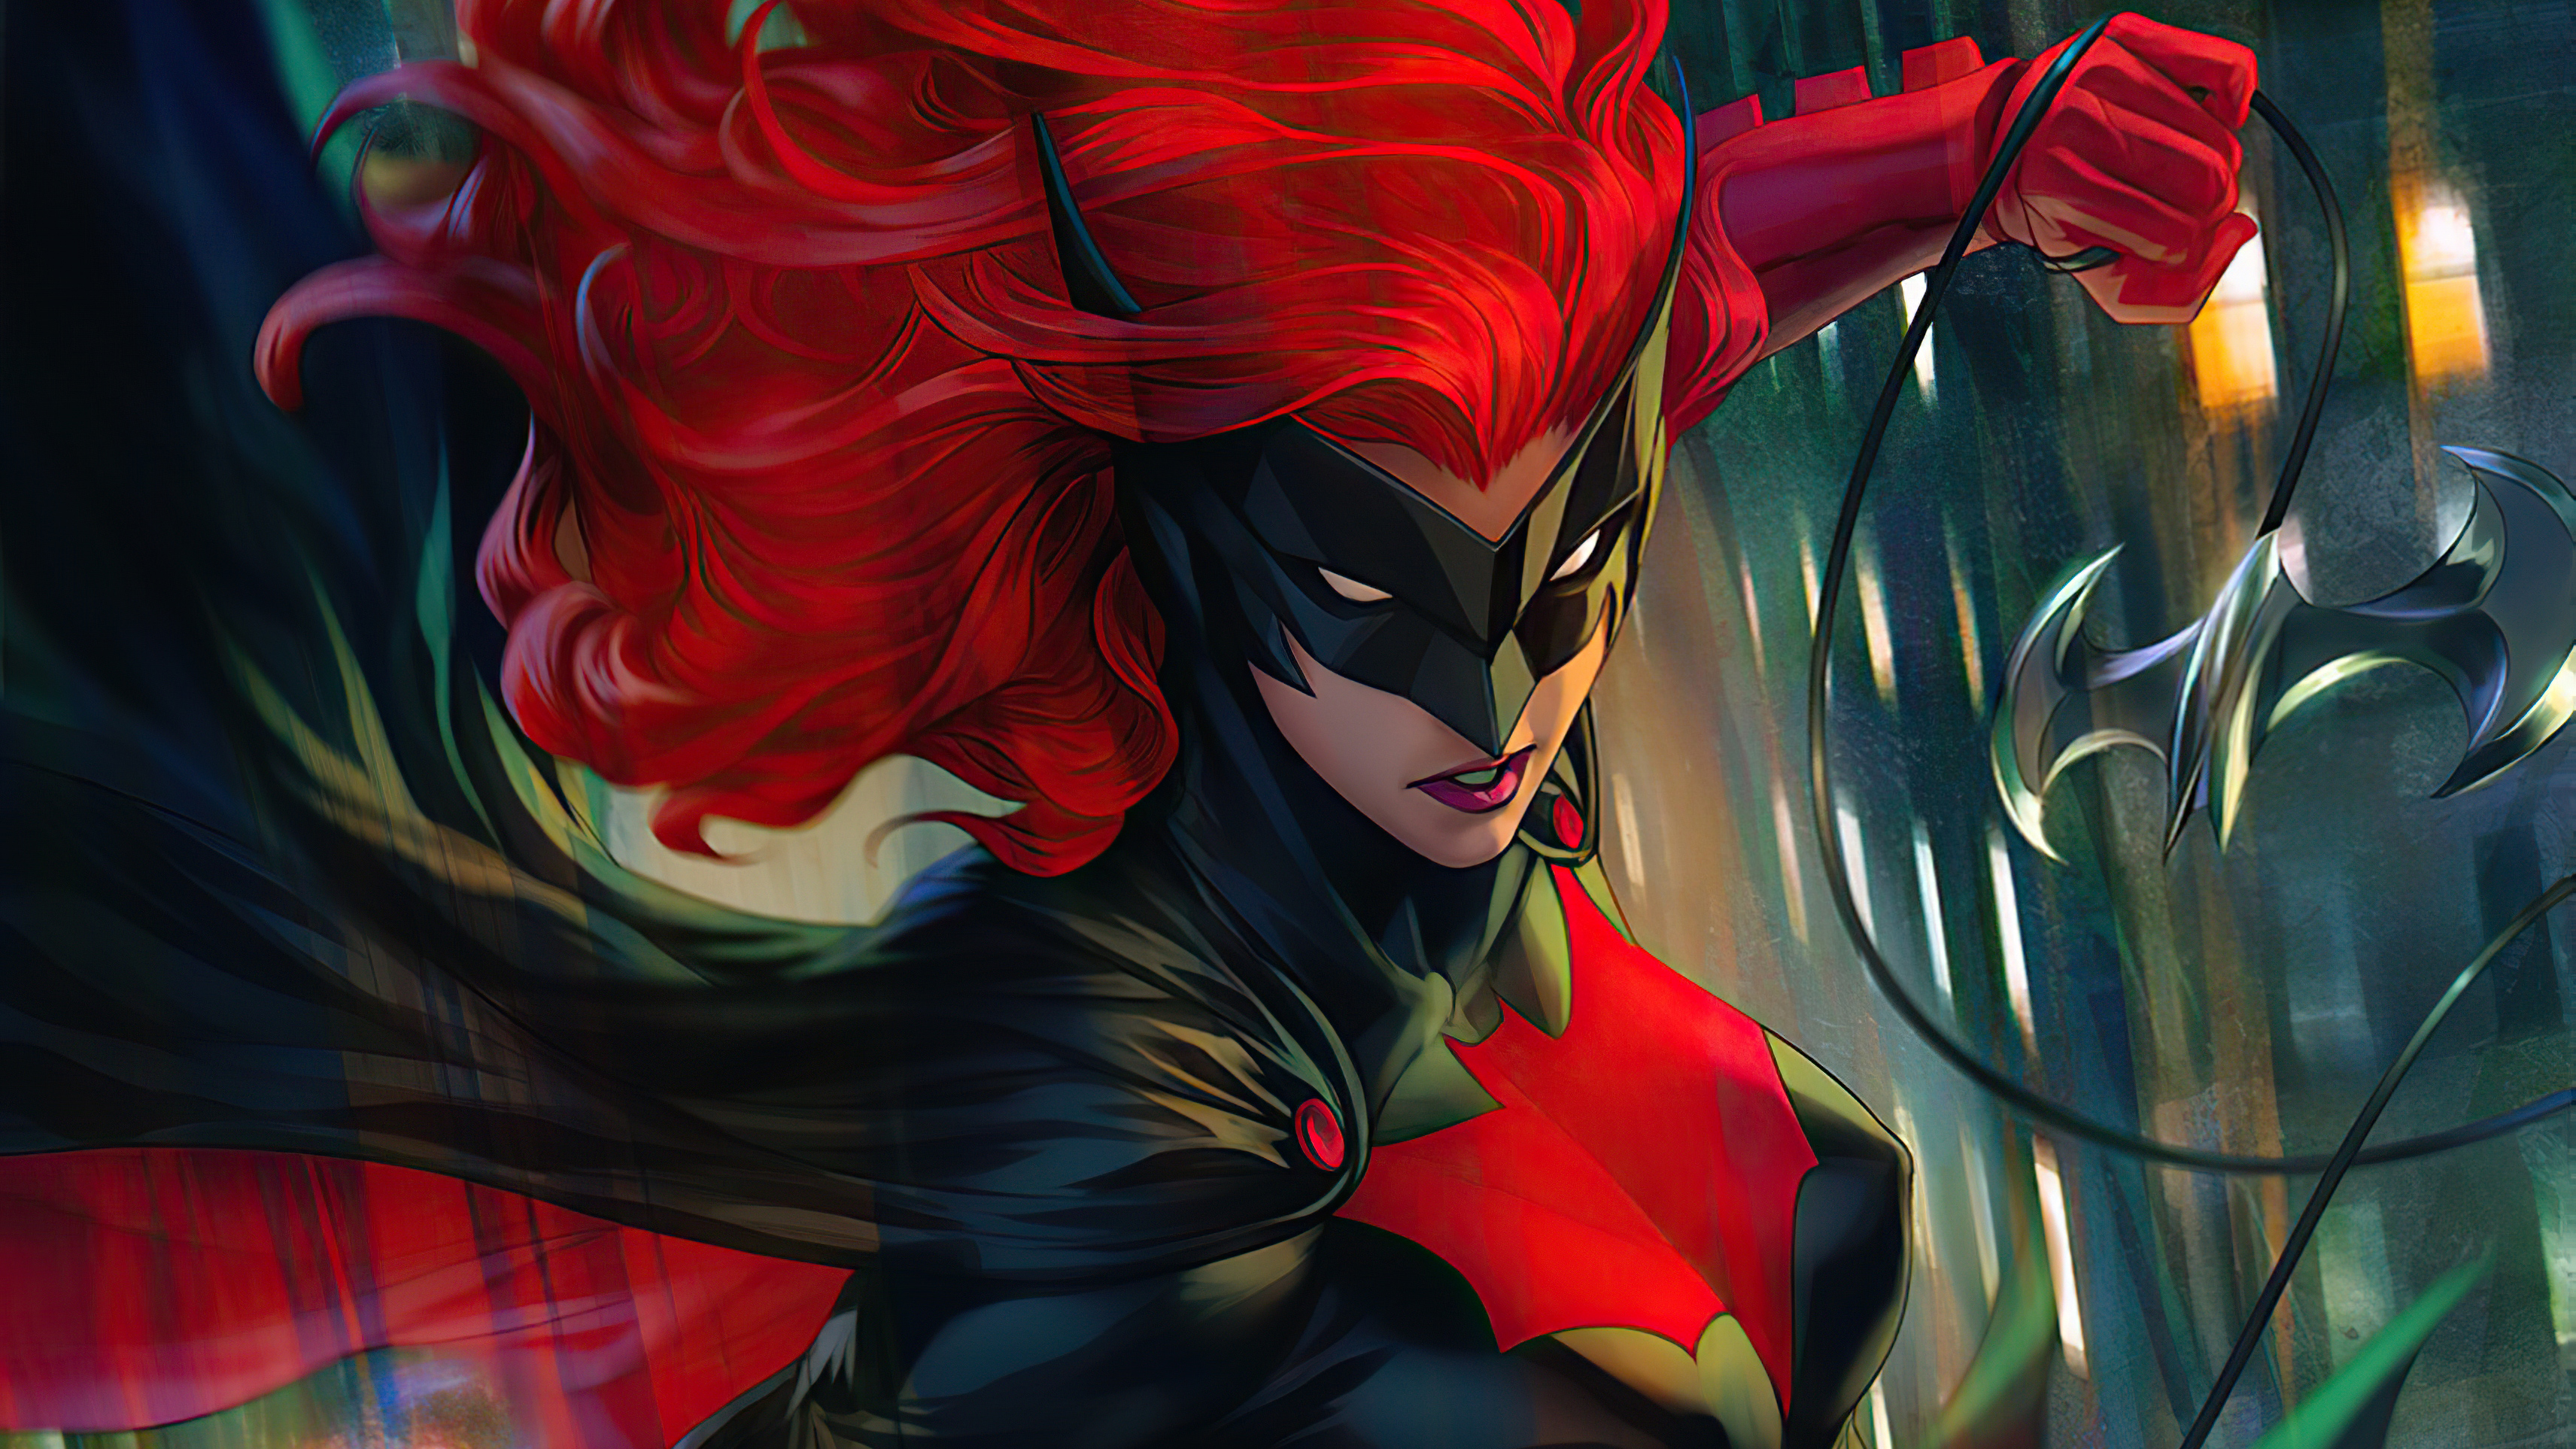 Wallpapers bat red hair superheroes on the desktop